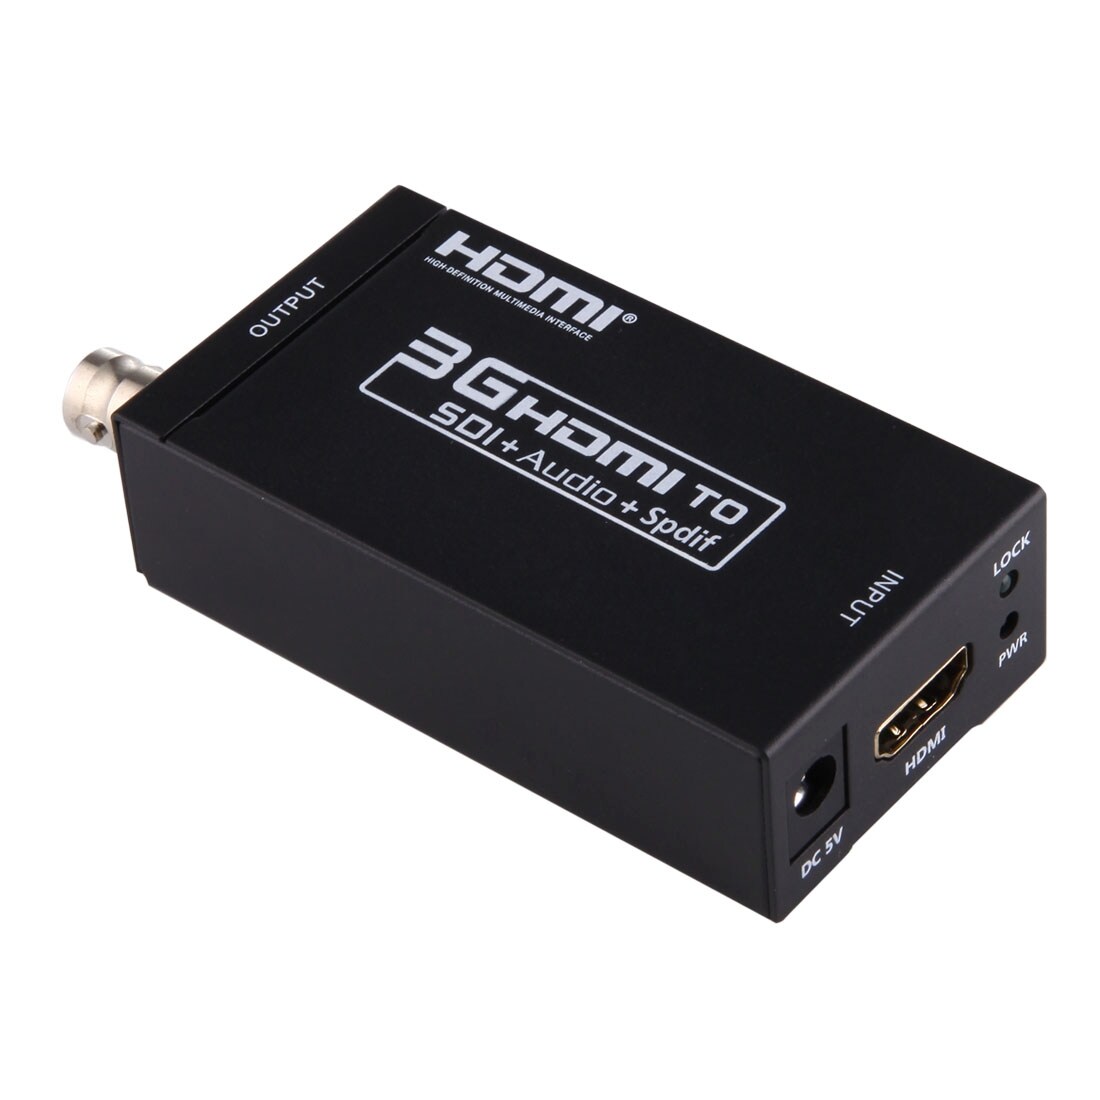 Signalomvandlare / konverterare – Från HDMI till SDI + SPDIF + 3,5mm